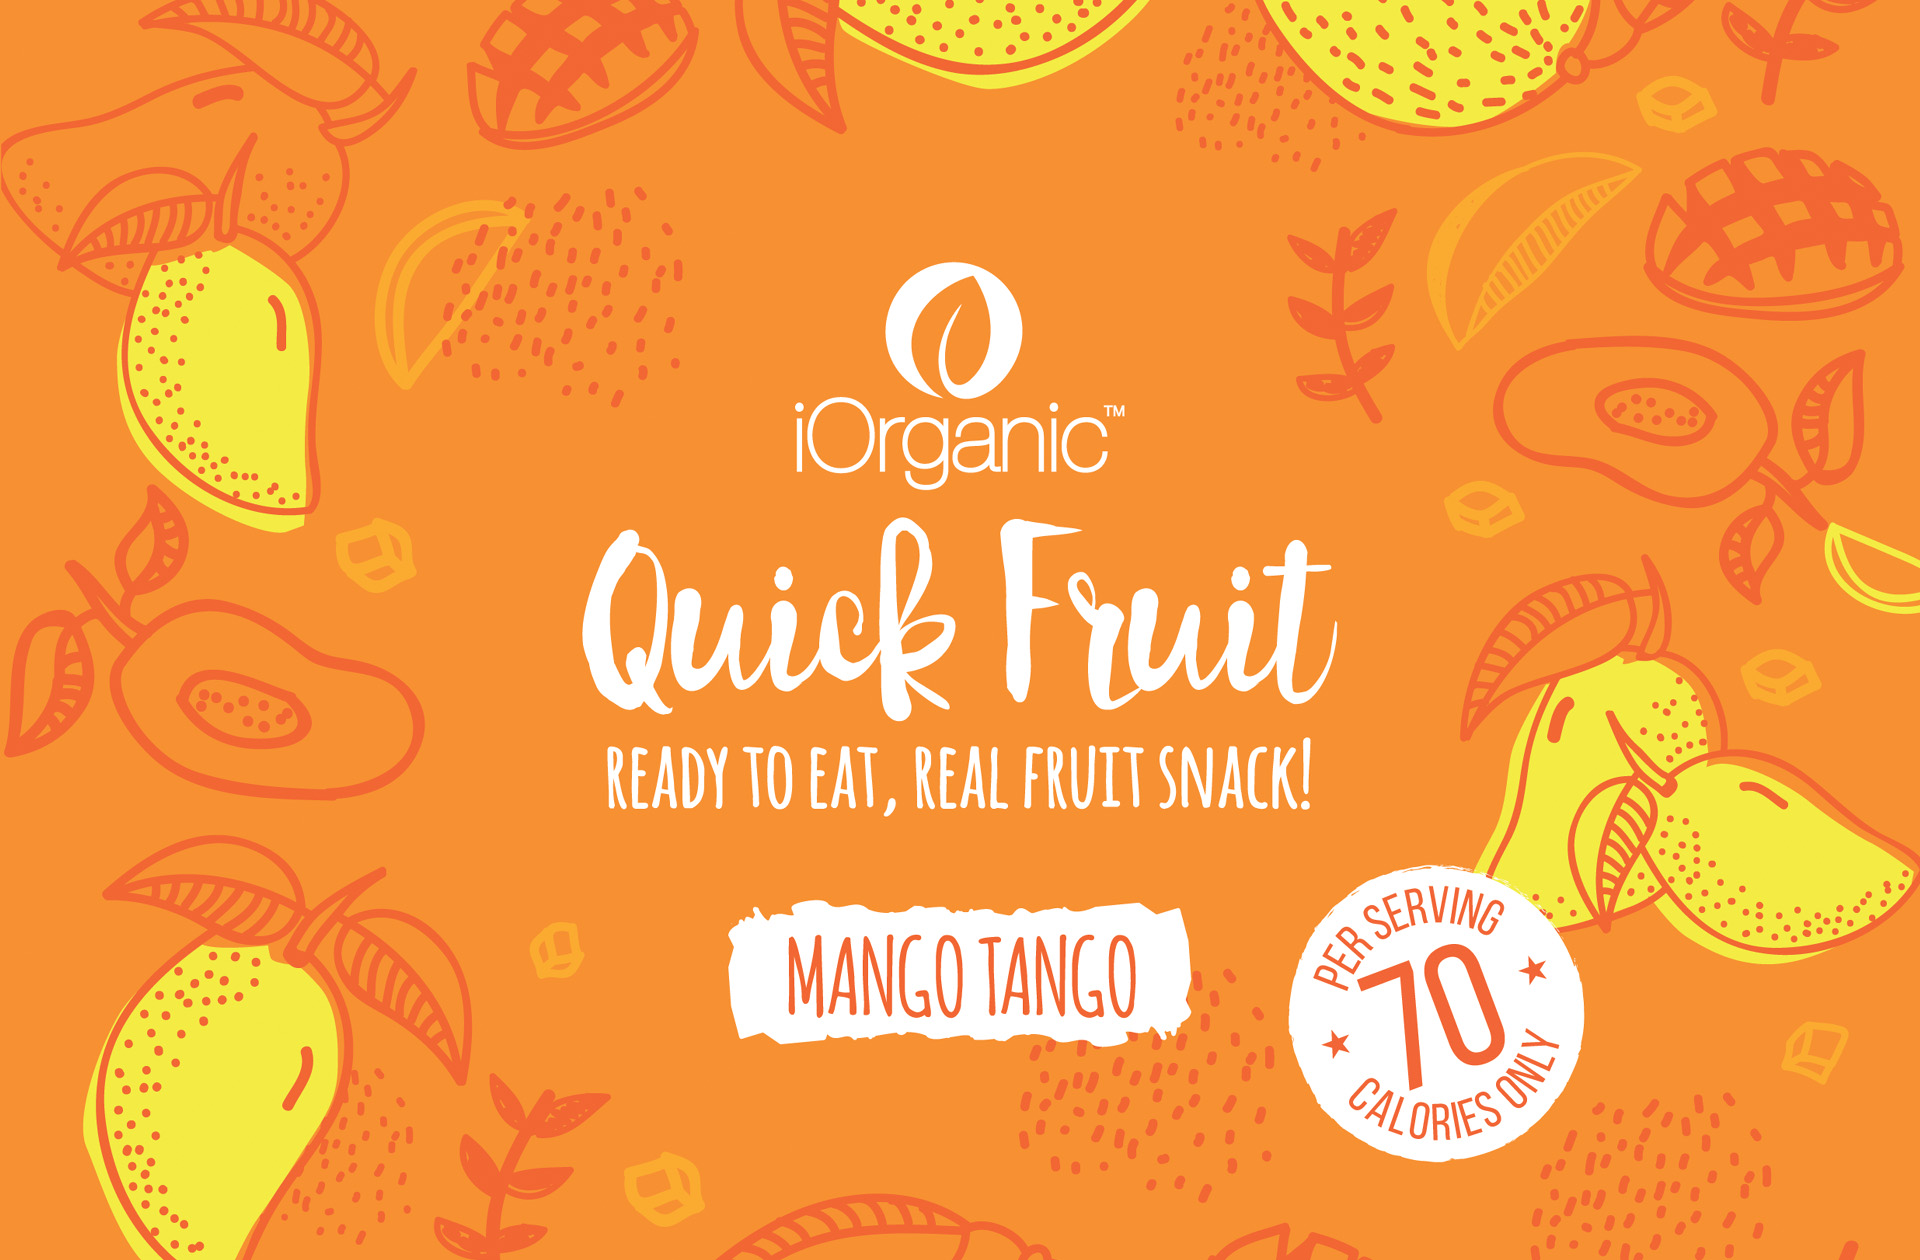 iOrganic Mango Packaging